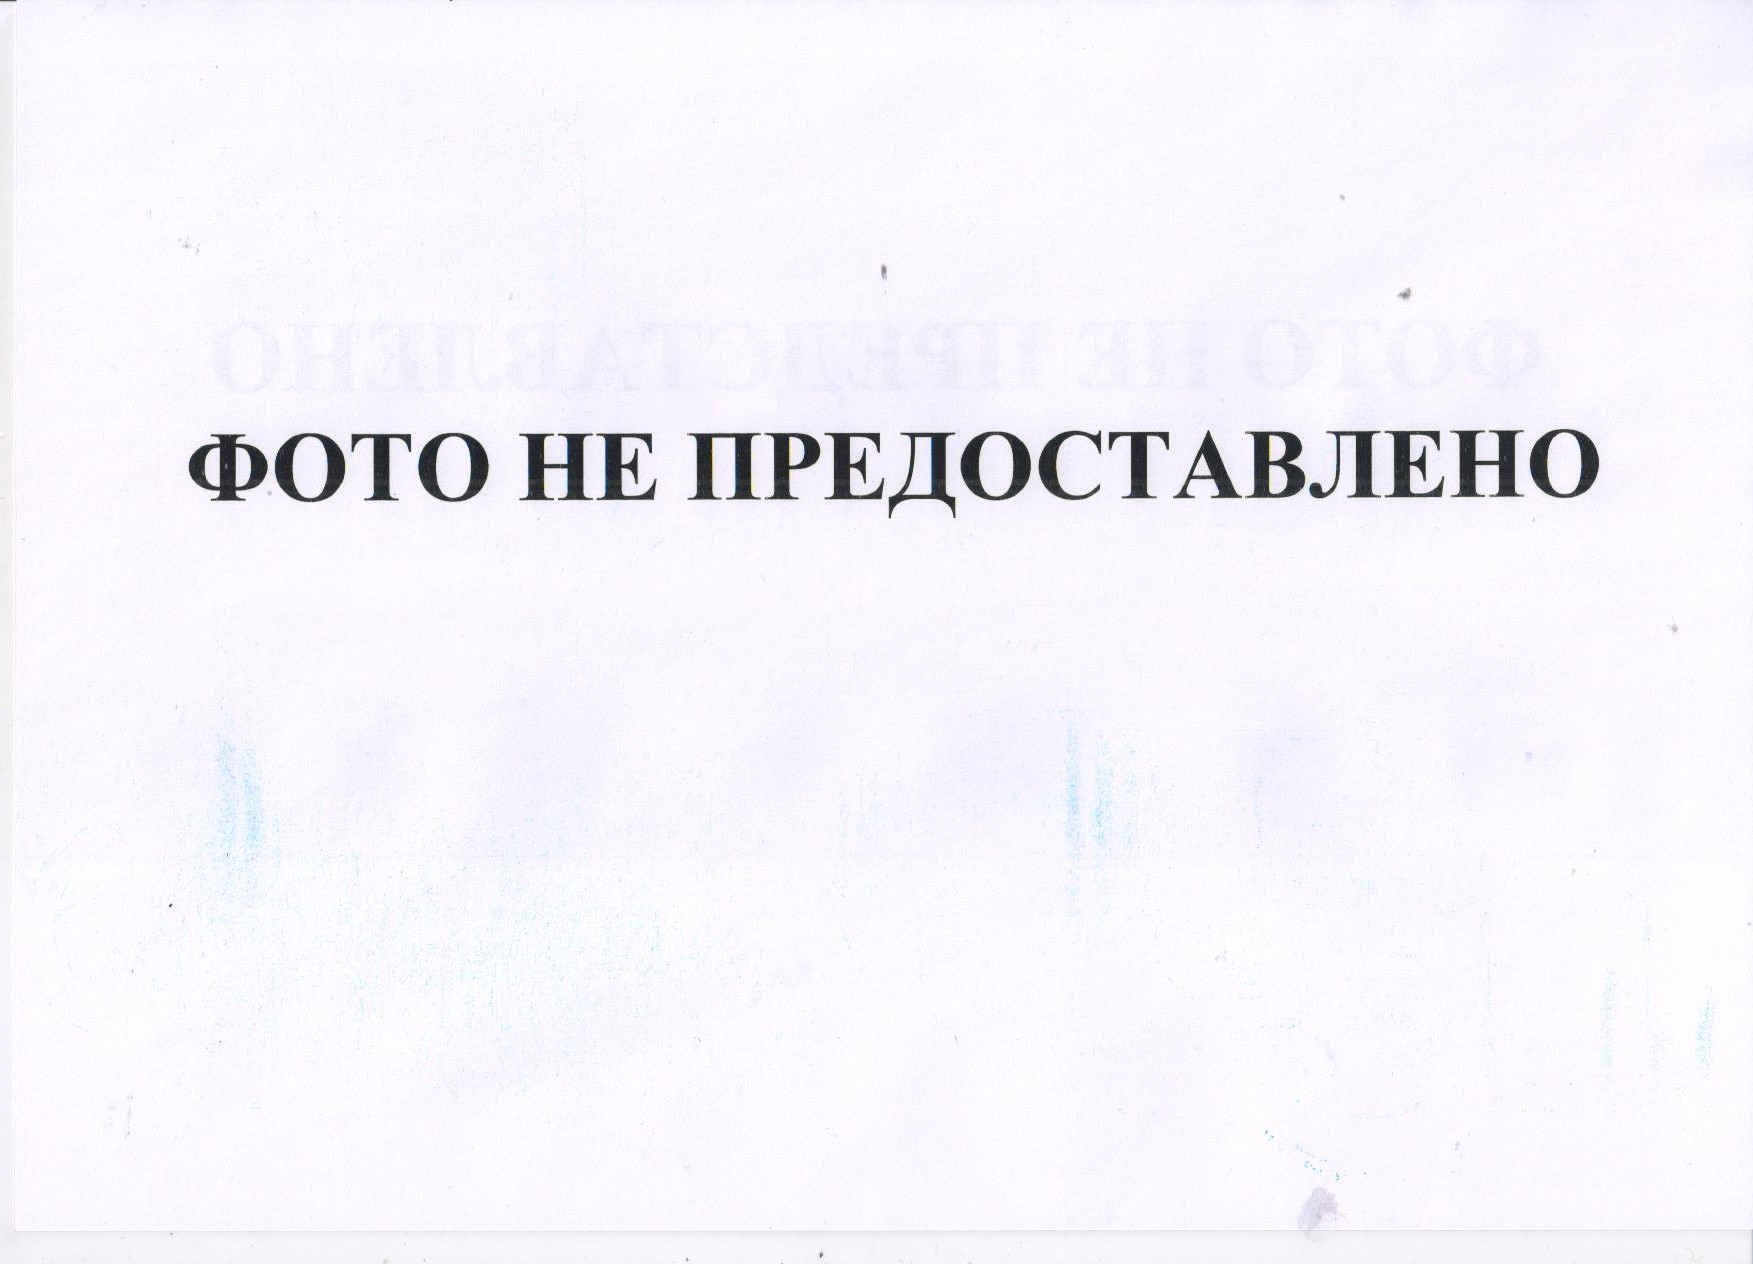 Право требования по исполнительному документу № 2-540/09 от 07.08.2009 в отношении Павлова Геннадия 